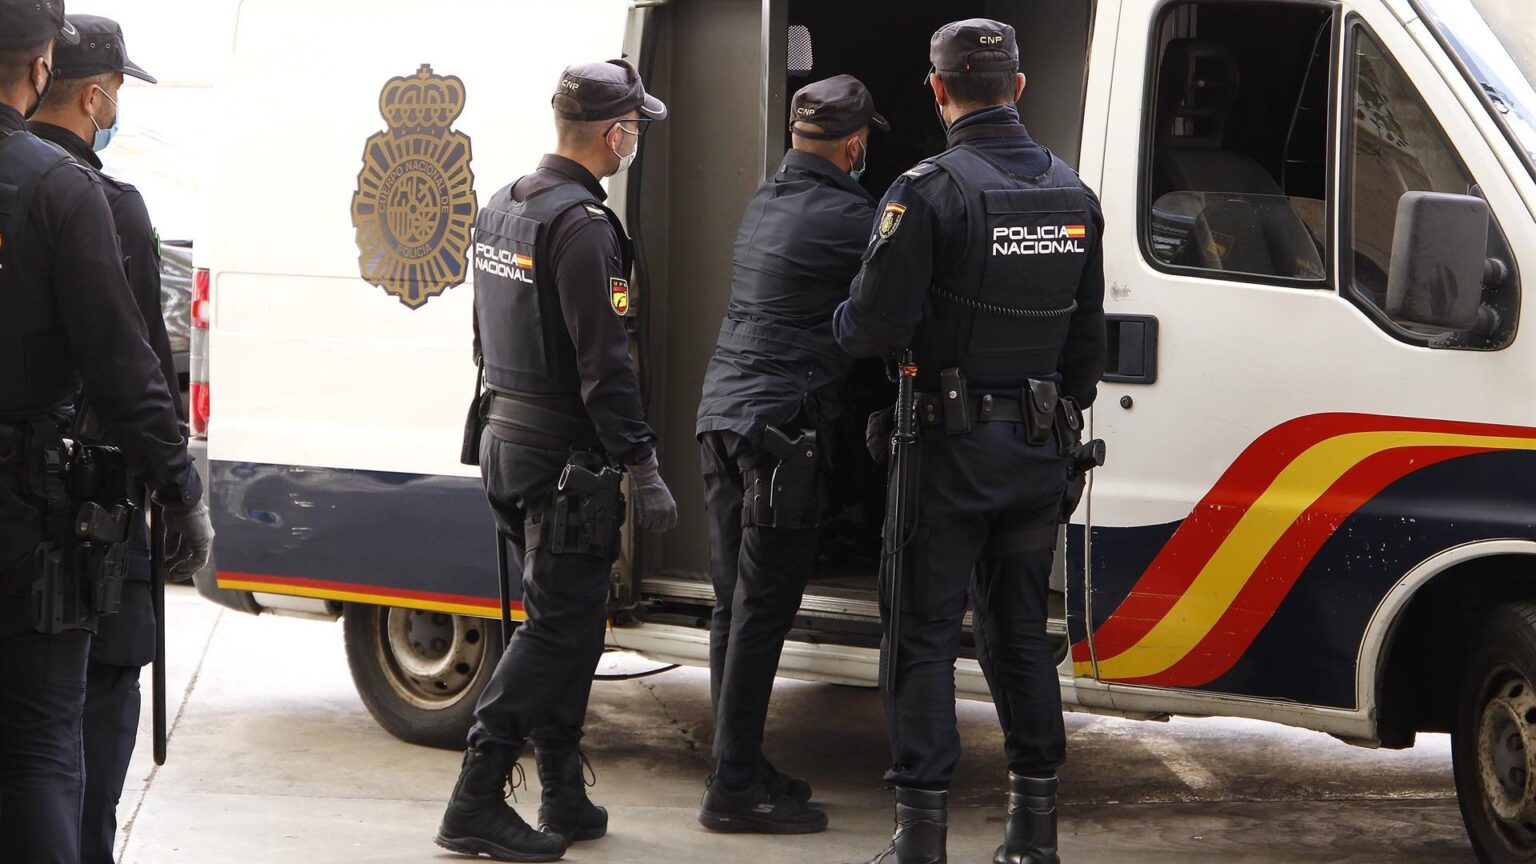 Un suicidio cada diez días: el drama silenciado de las fuerzas de seguridad españolas